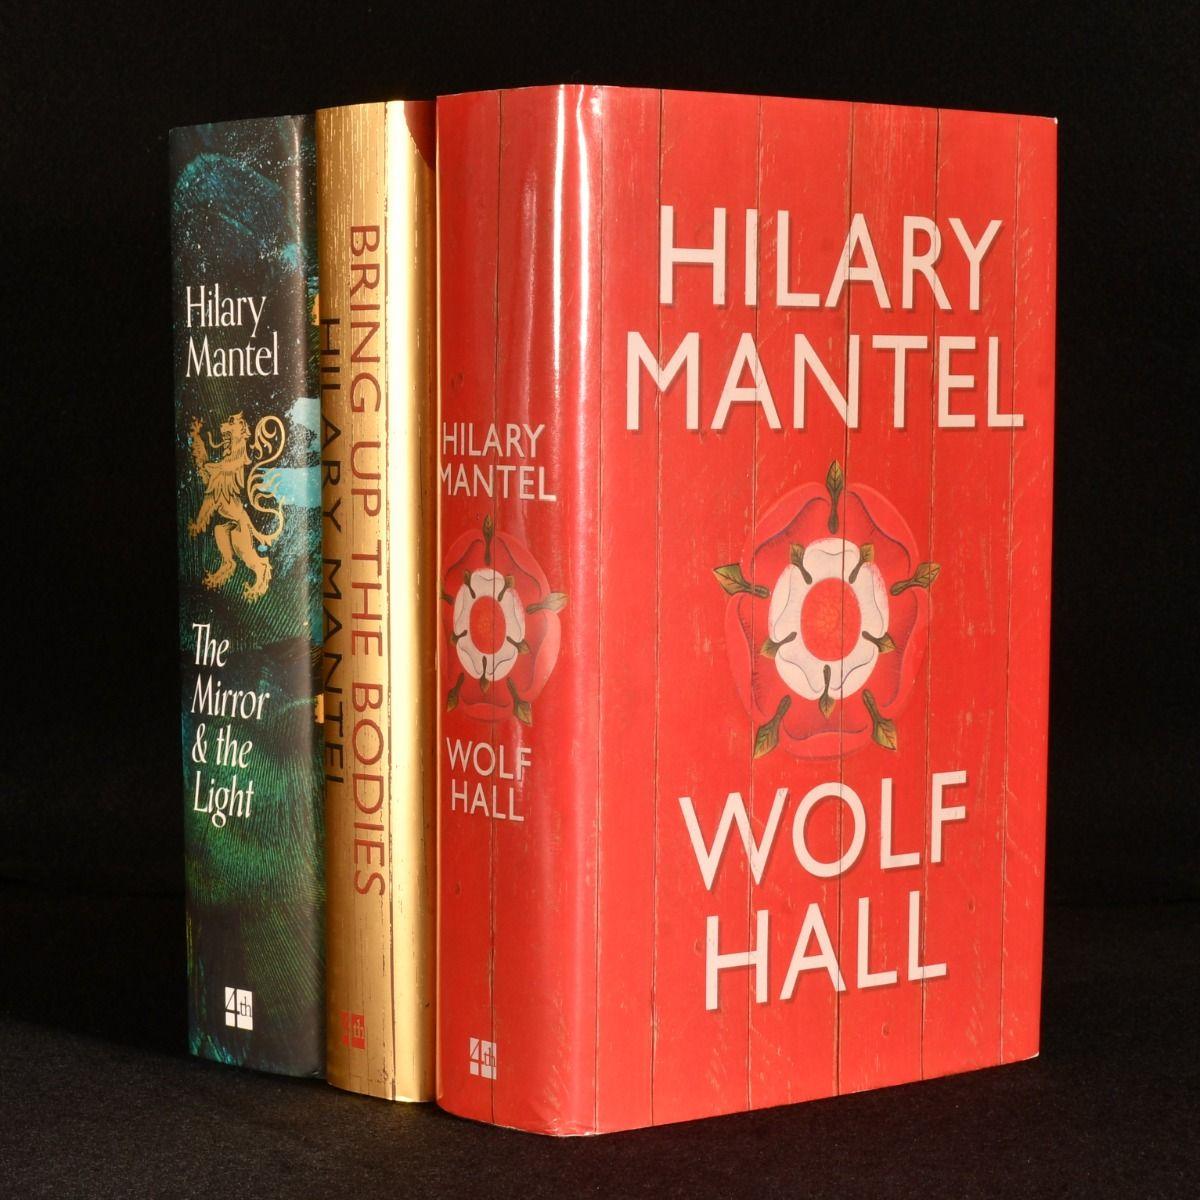 Ein eindrucksvoller signierter Erstdruck von Hilary Mantels Magnum Opus, einer Trilogie über den Aufstieg und Fall von Thomas Cromwell.

Alle drei Bände sind Erstausgaben und Erstdrucke.

Jeder der drei Romane ist von Mantel signiert, 